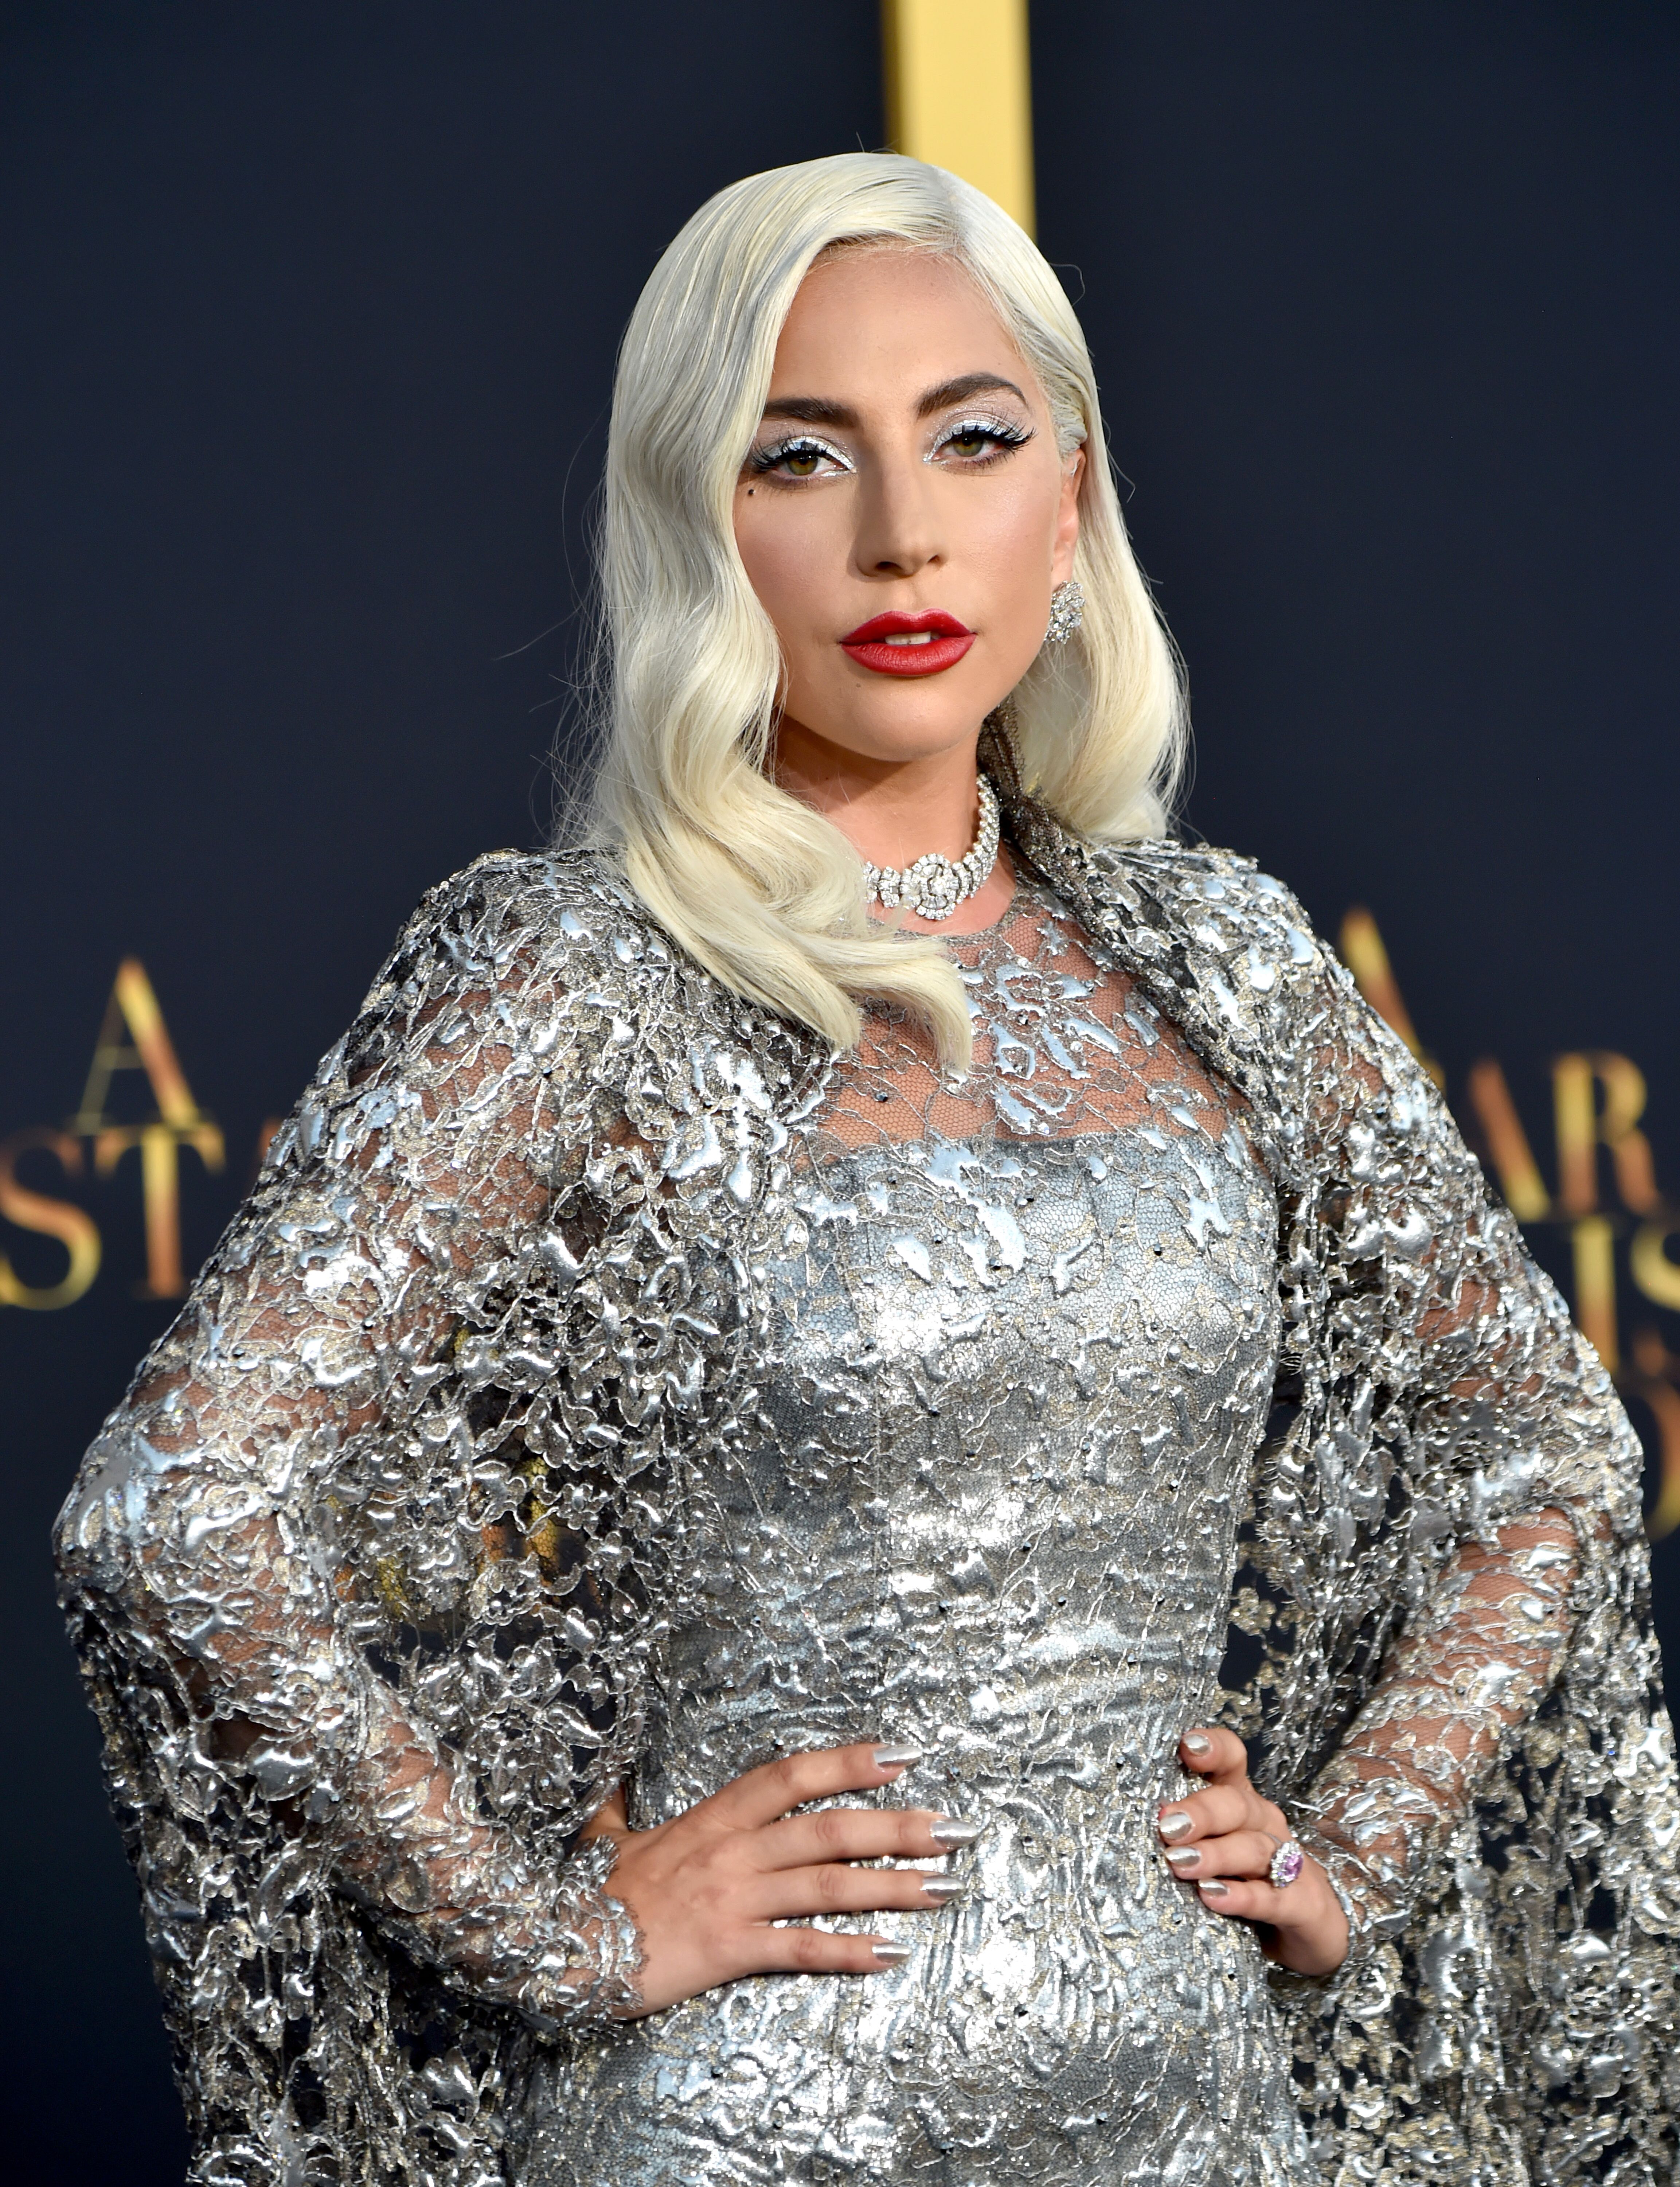 Lady Gaga bei der Premiere von "A Star Is Born" im The Shrine Auditorium am 24. September 2018 in Los Angeles, Kalifornien | Quelle: Getty Images